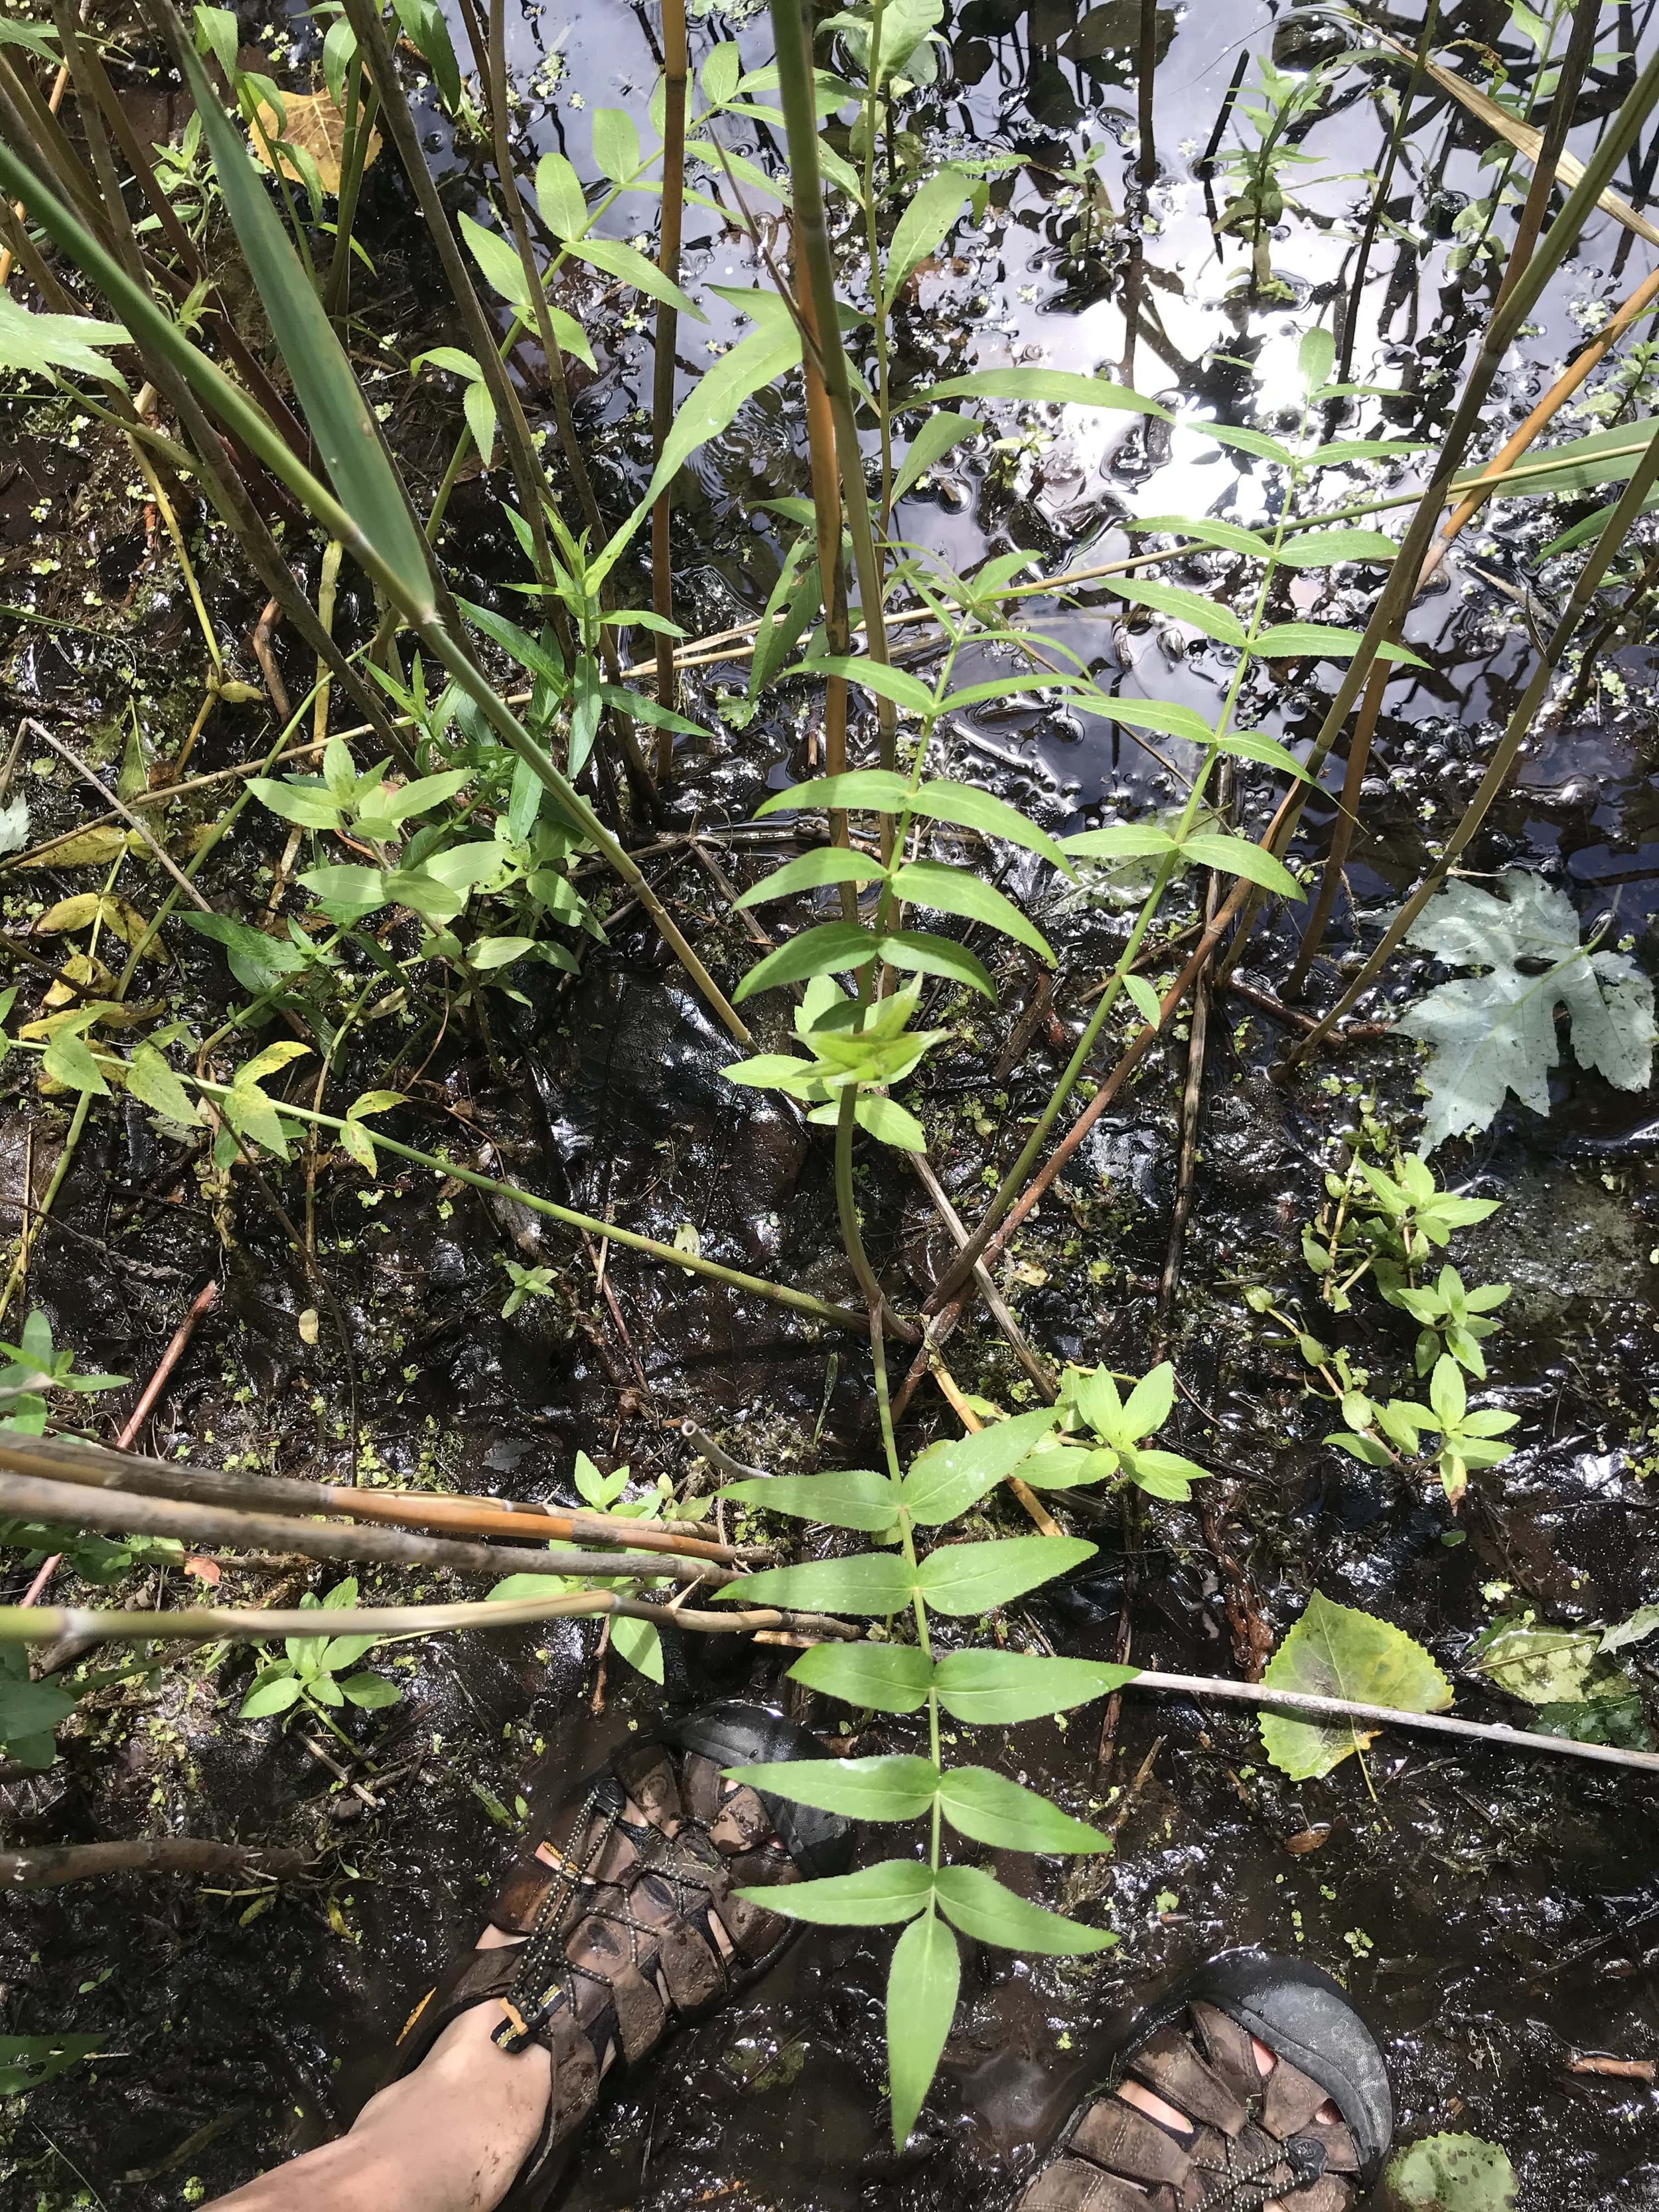 Water Parsnip (Sium suave) leaves